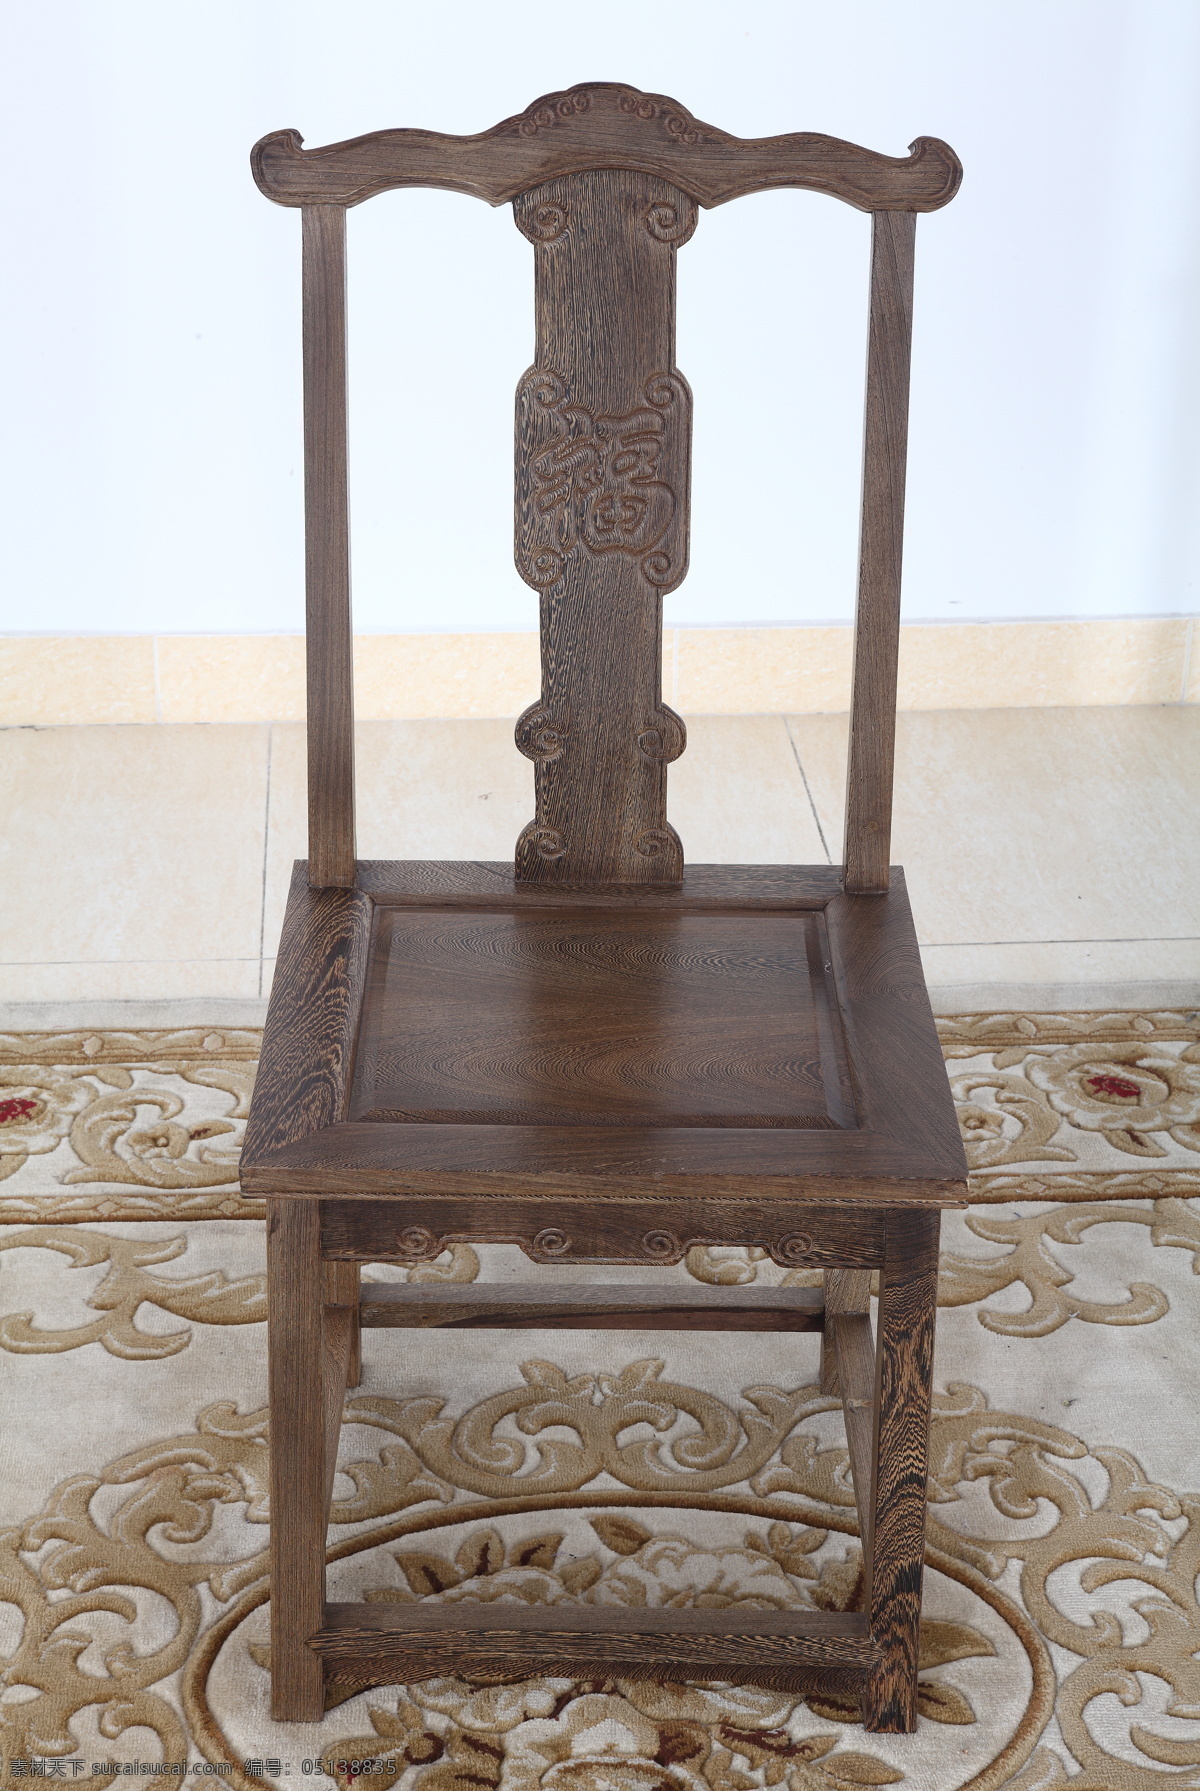 实木椅子 木椅子 椅子 原木色 方形椅子 大椅子 生活素材 家具 文化艺术 传统文化